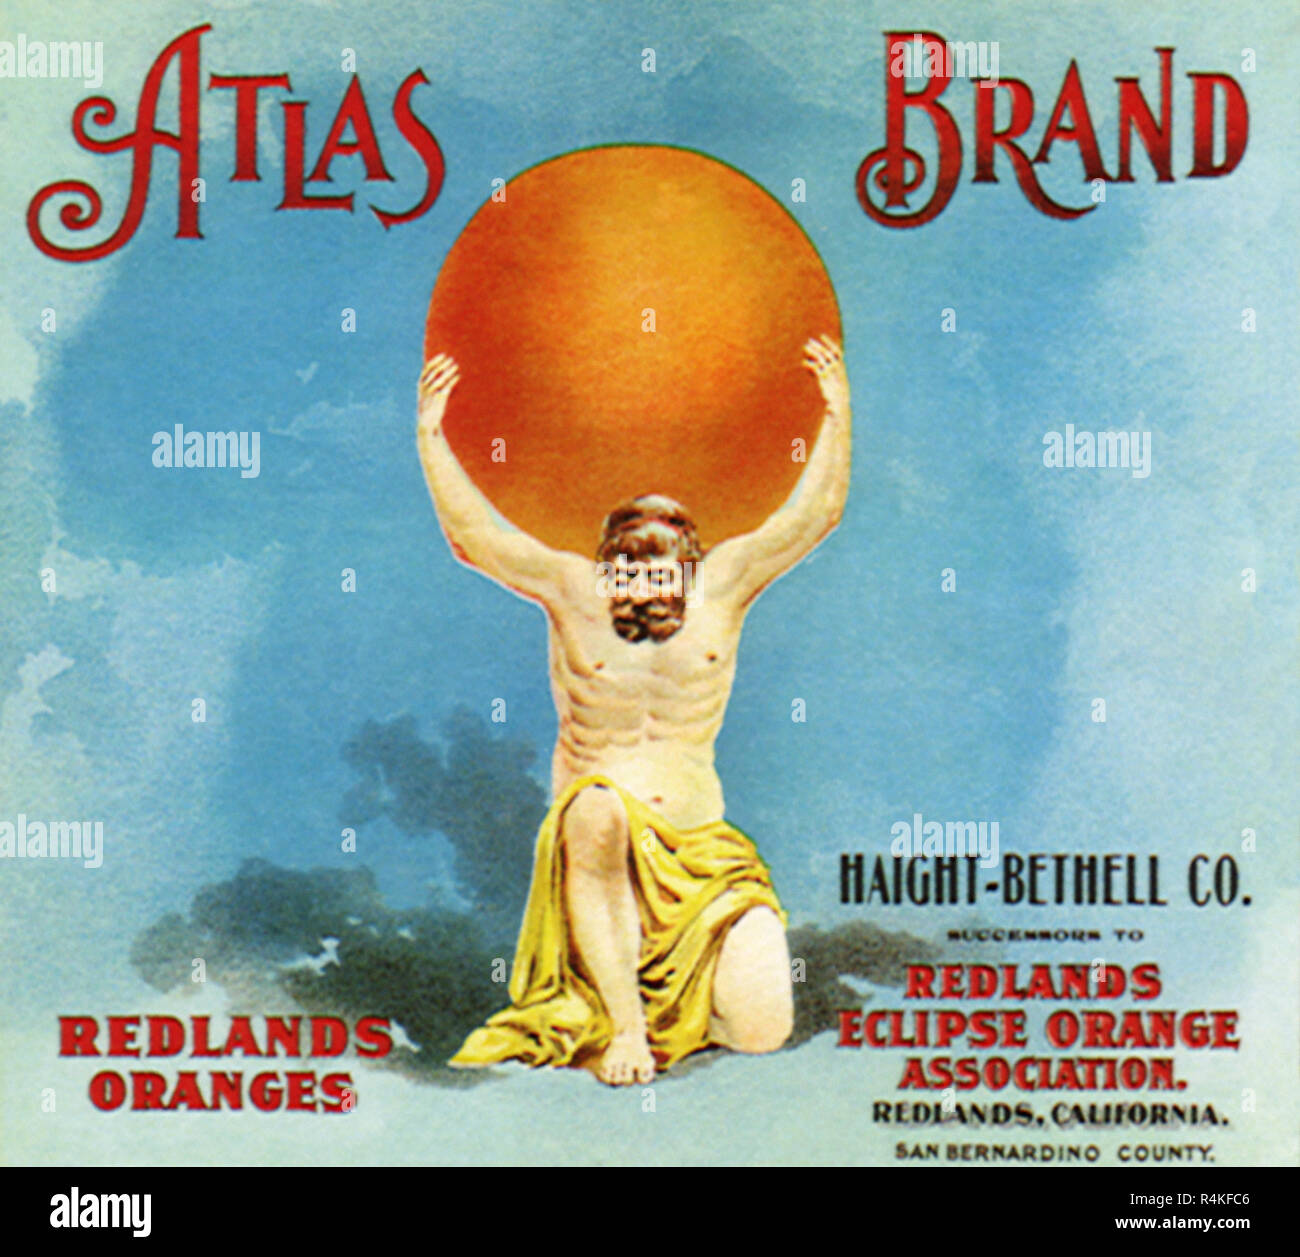 Atlas Bearing Orange. Stock Photo